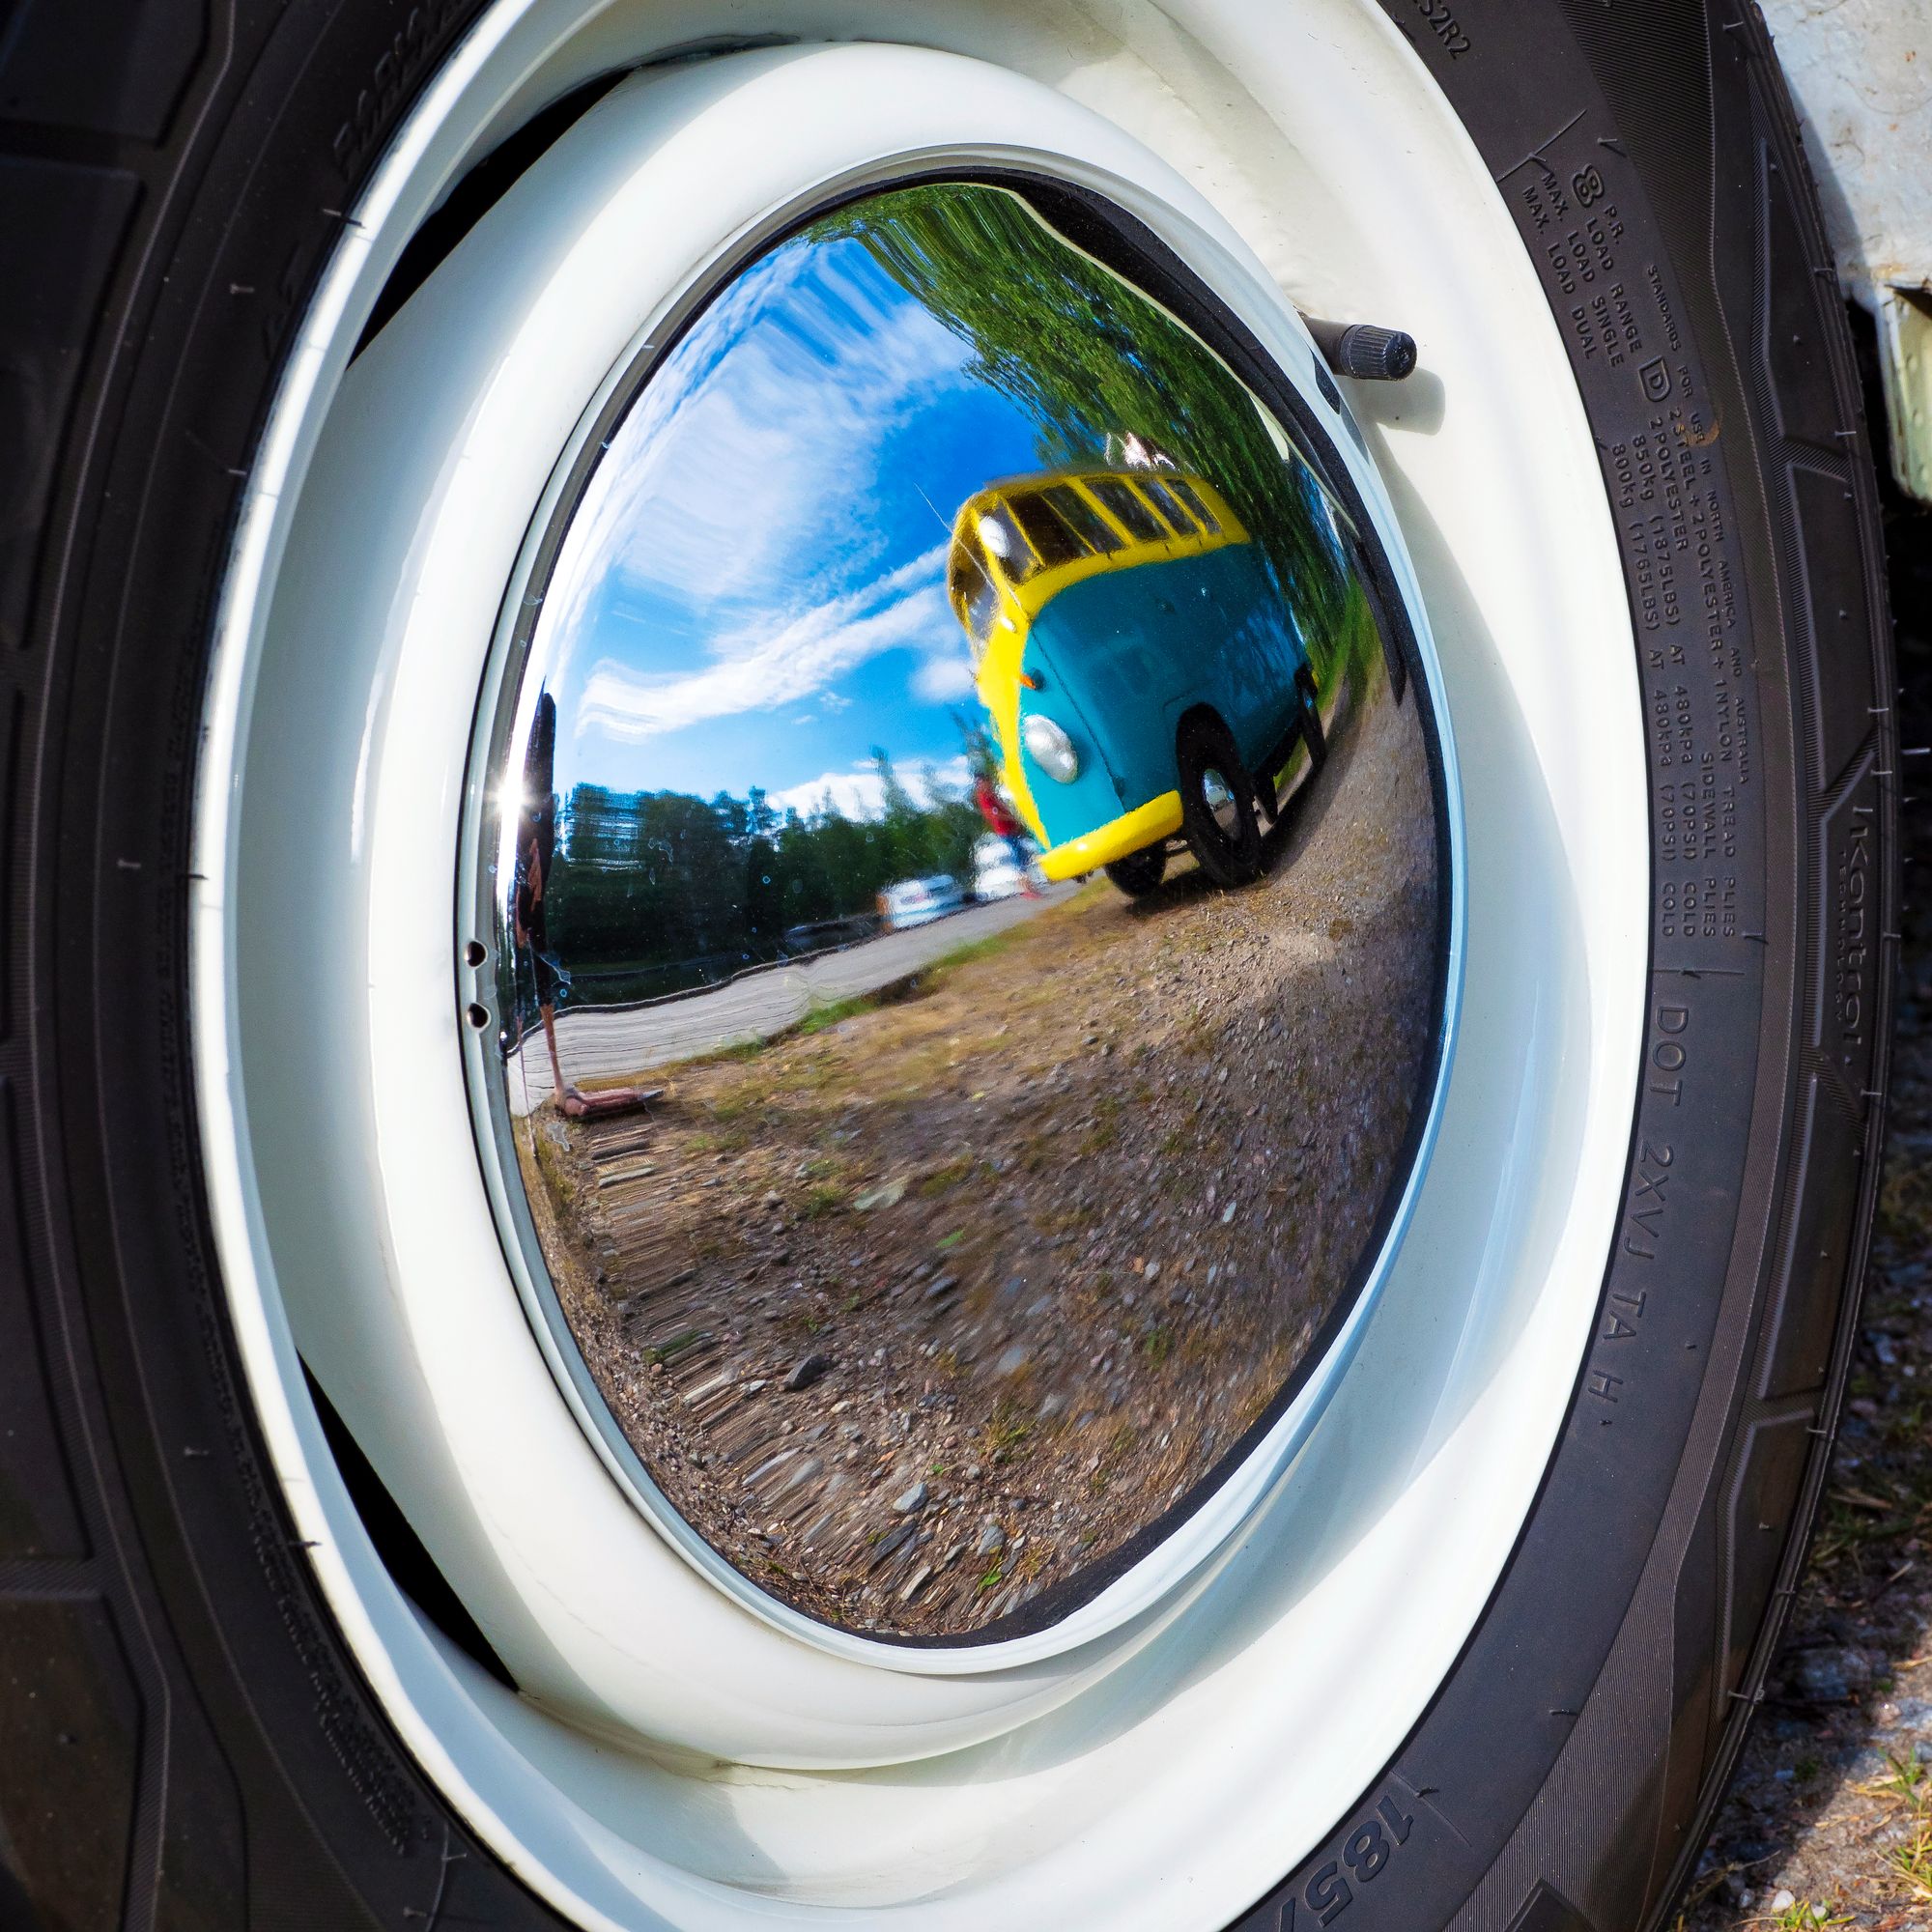 Volkkariharrastajan ajoneuvon pölykapselit pidetään peilinkirkkaina. © Ville Vanhala